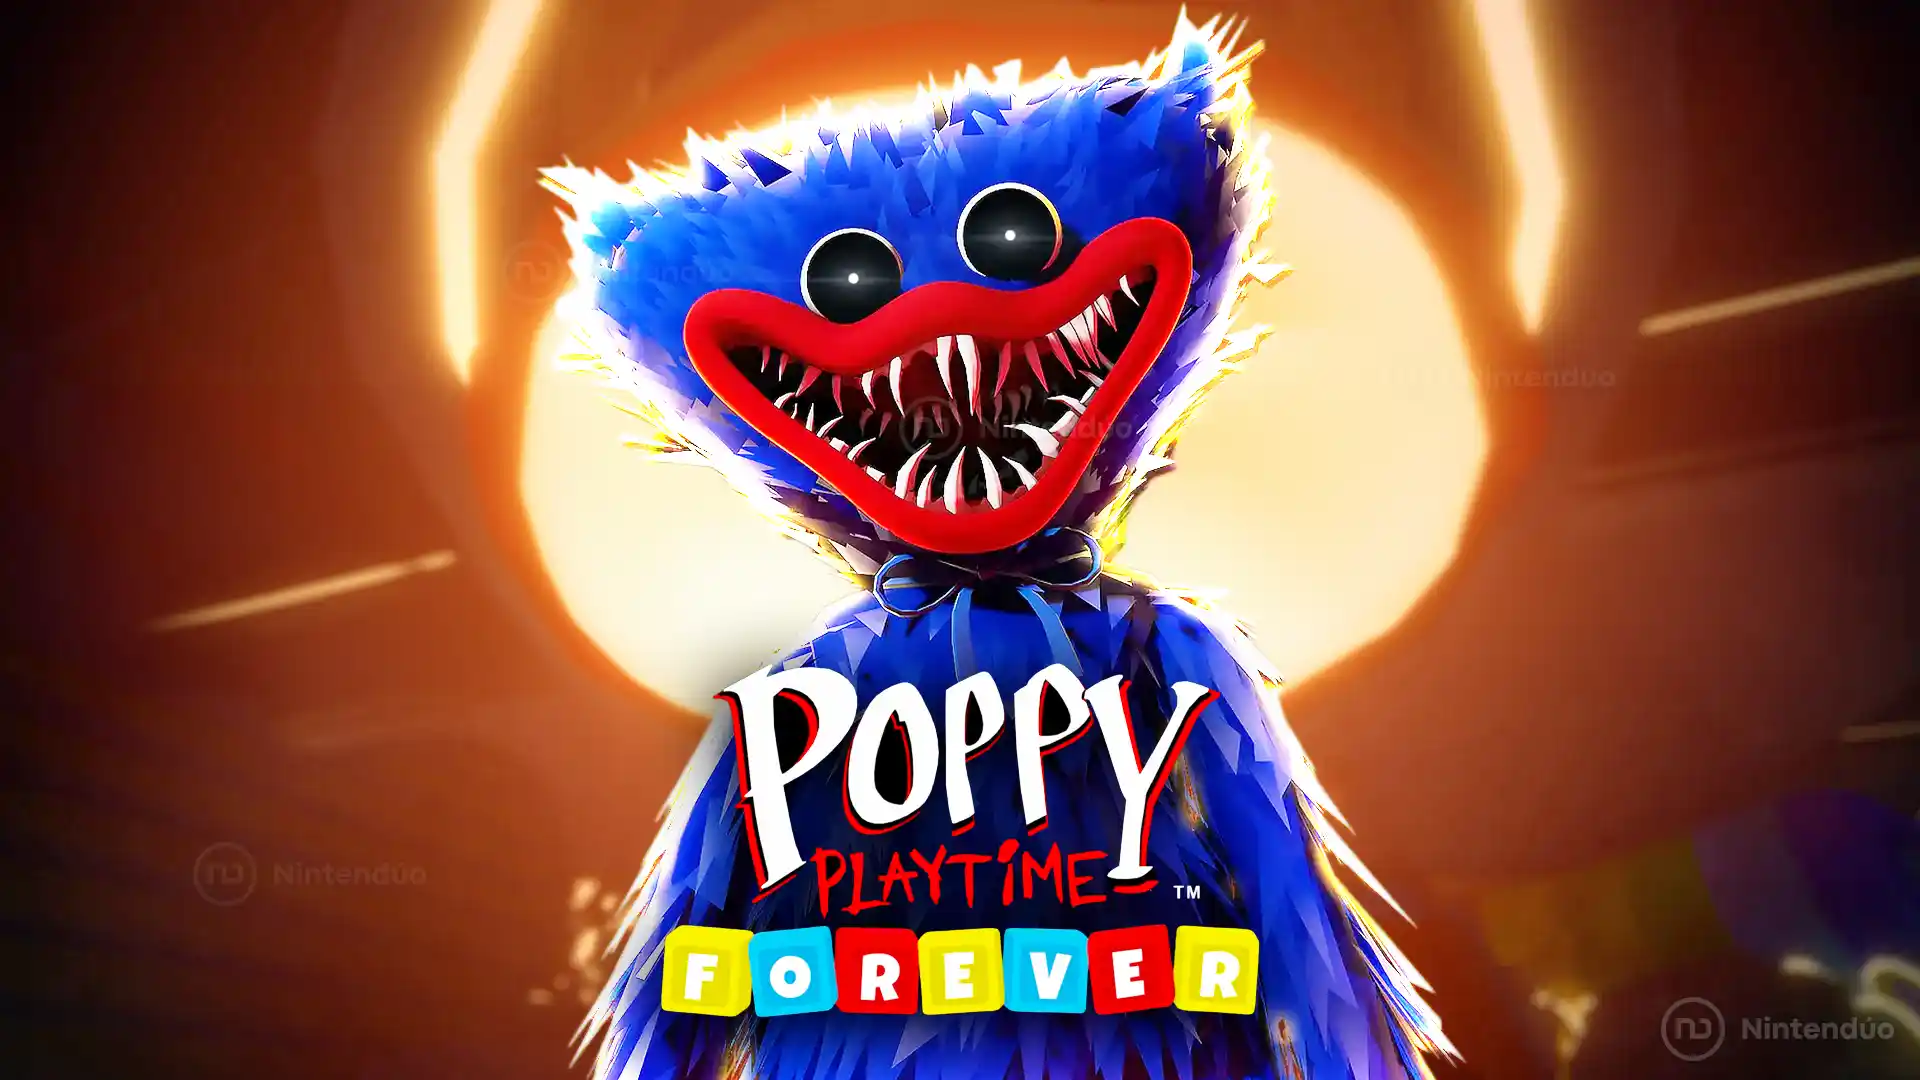 Tráiler oficial de Poppy Playtime Forever, un nuevo juego gratis e infinito